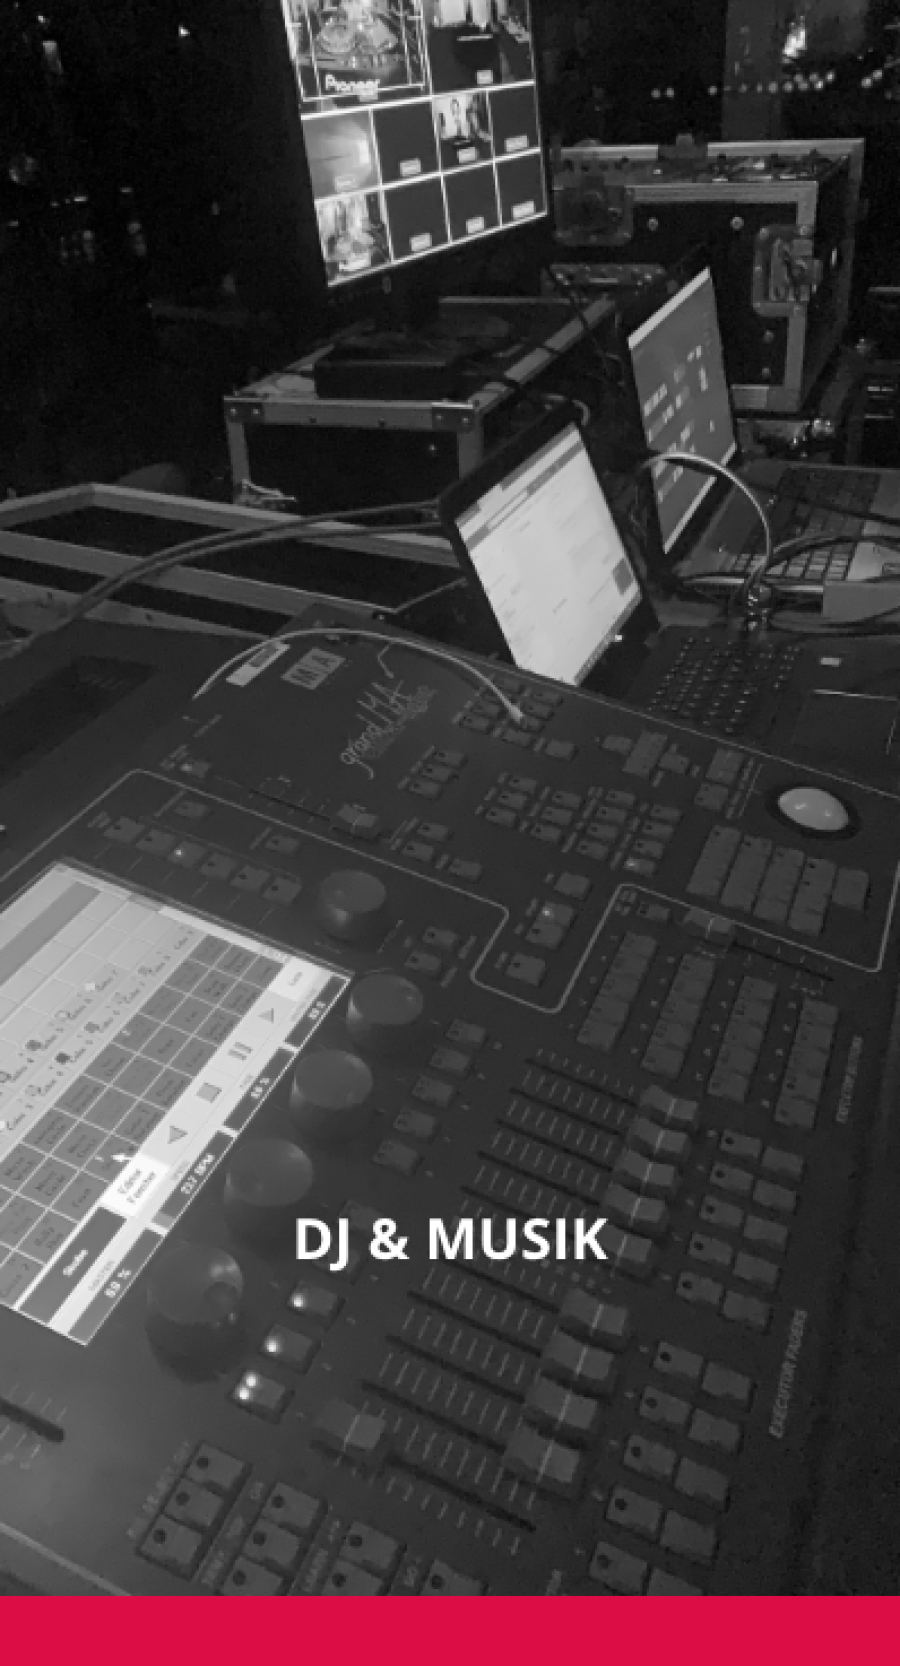 Bild mit DJ Equipment im Hintergrund